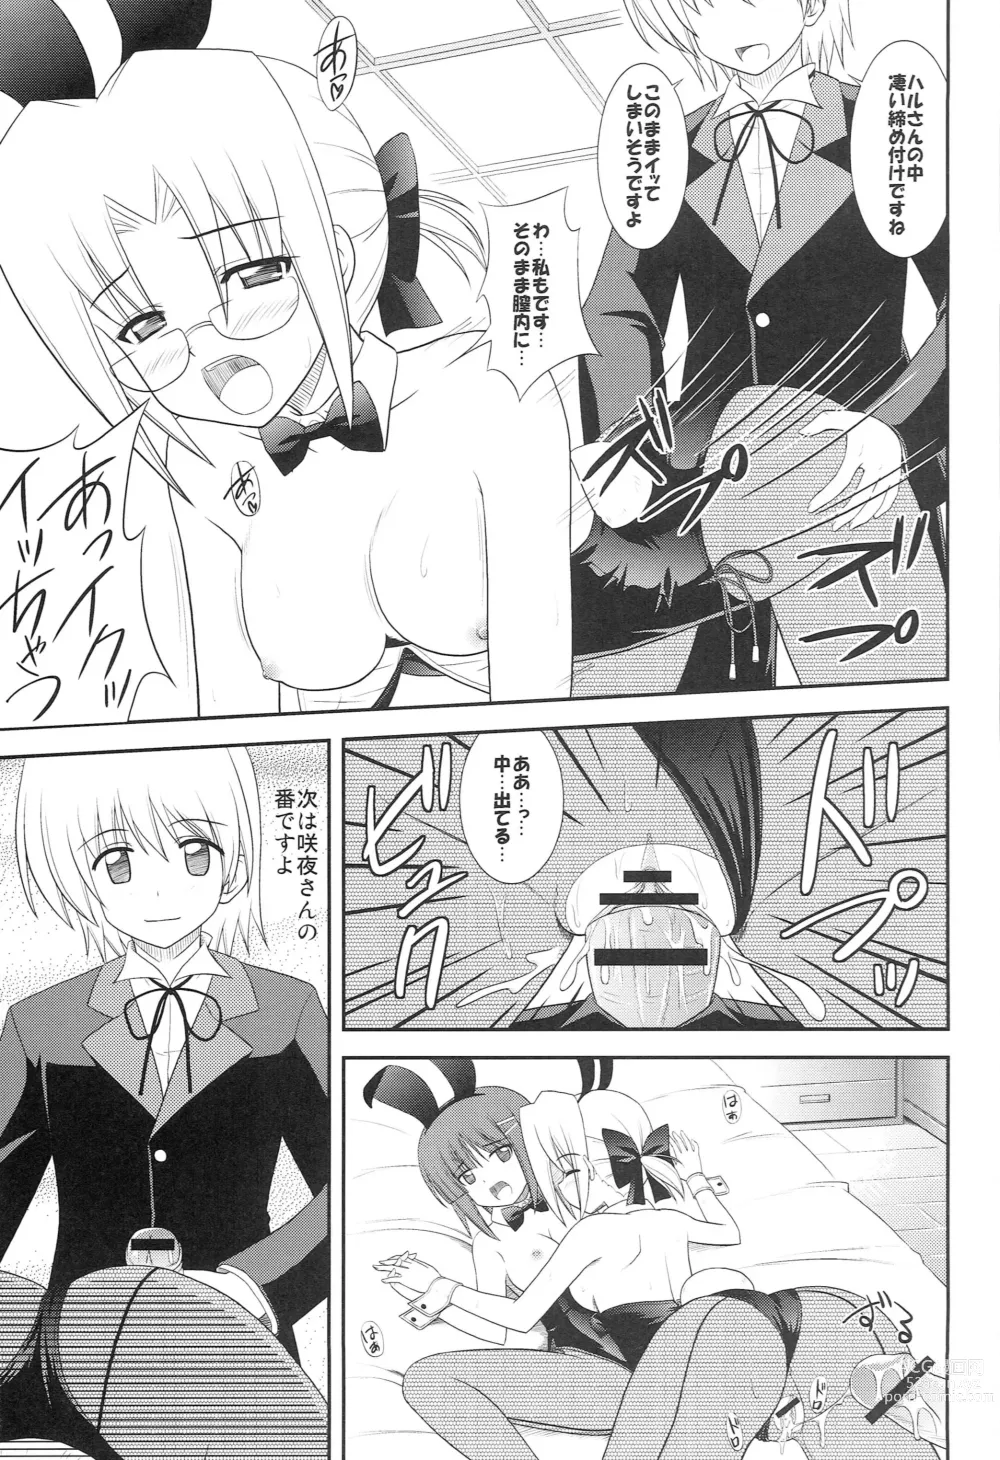 Page 20 of doujinshi Datto no Gotoku!